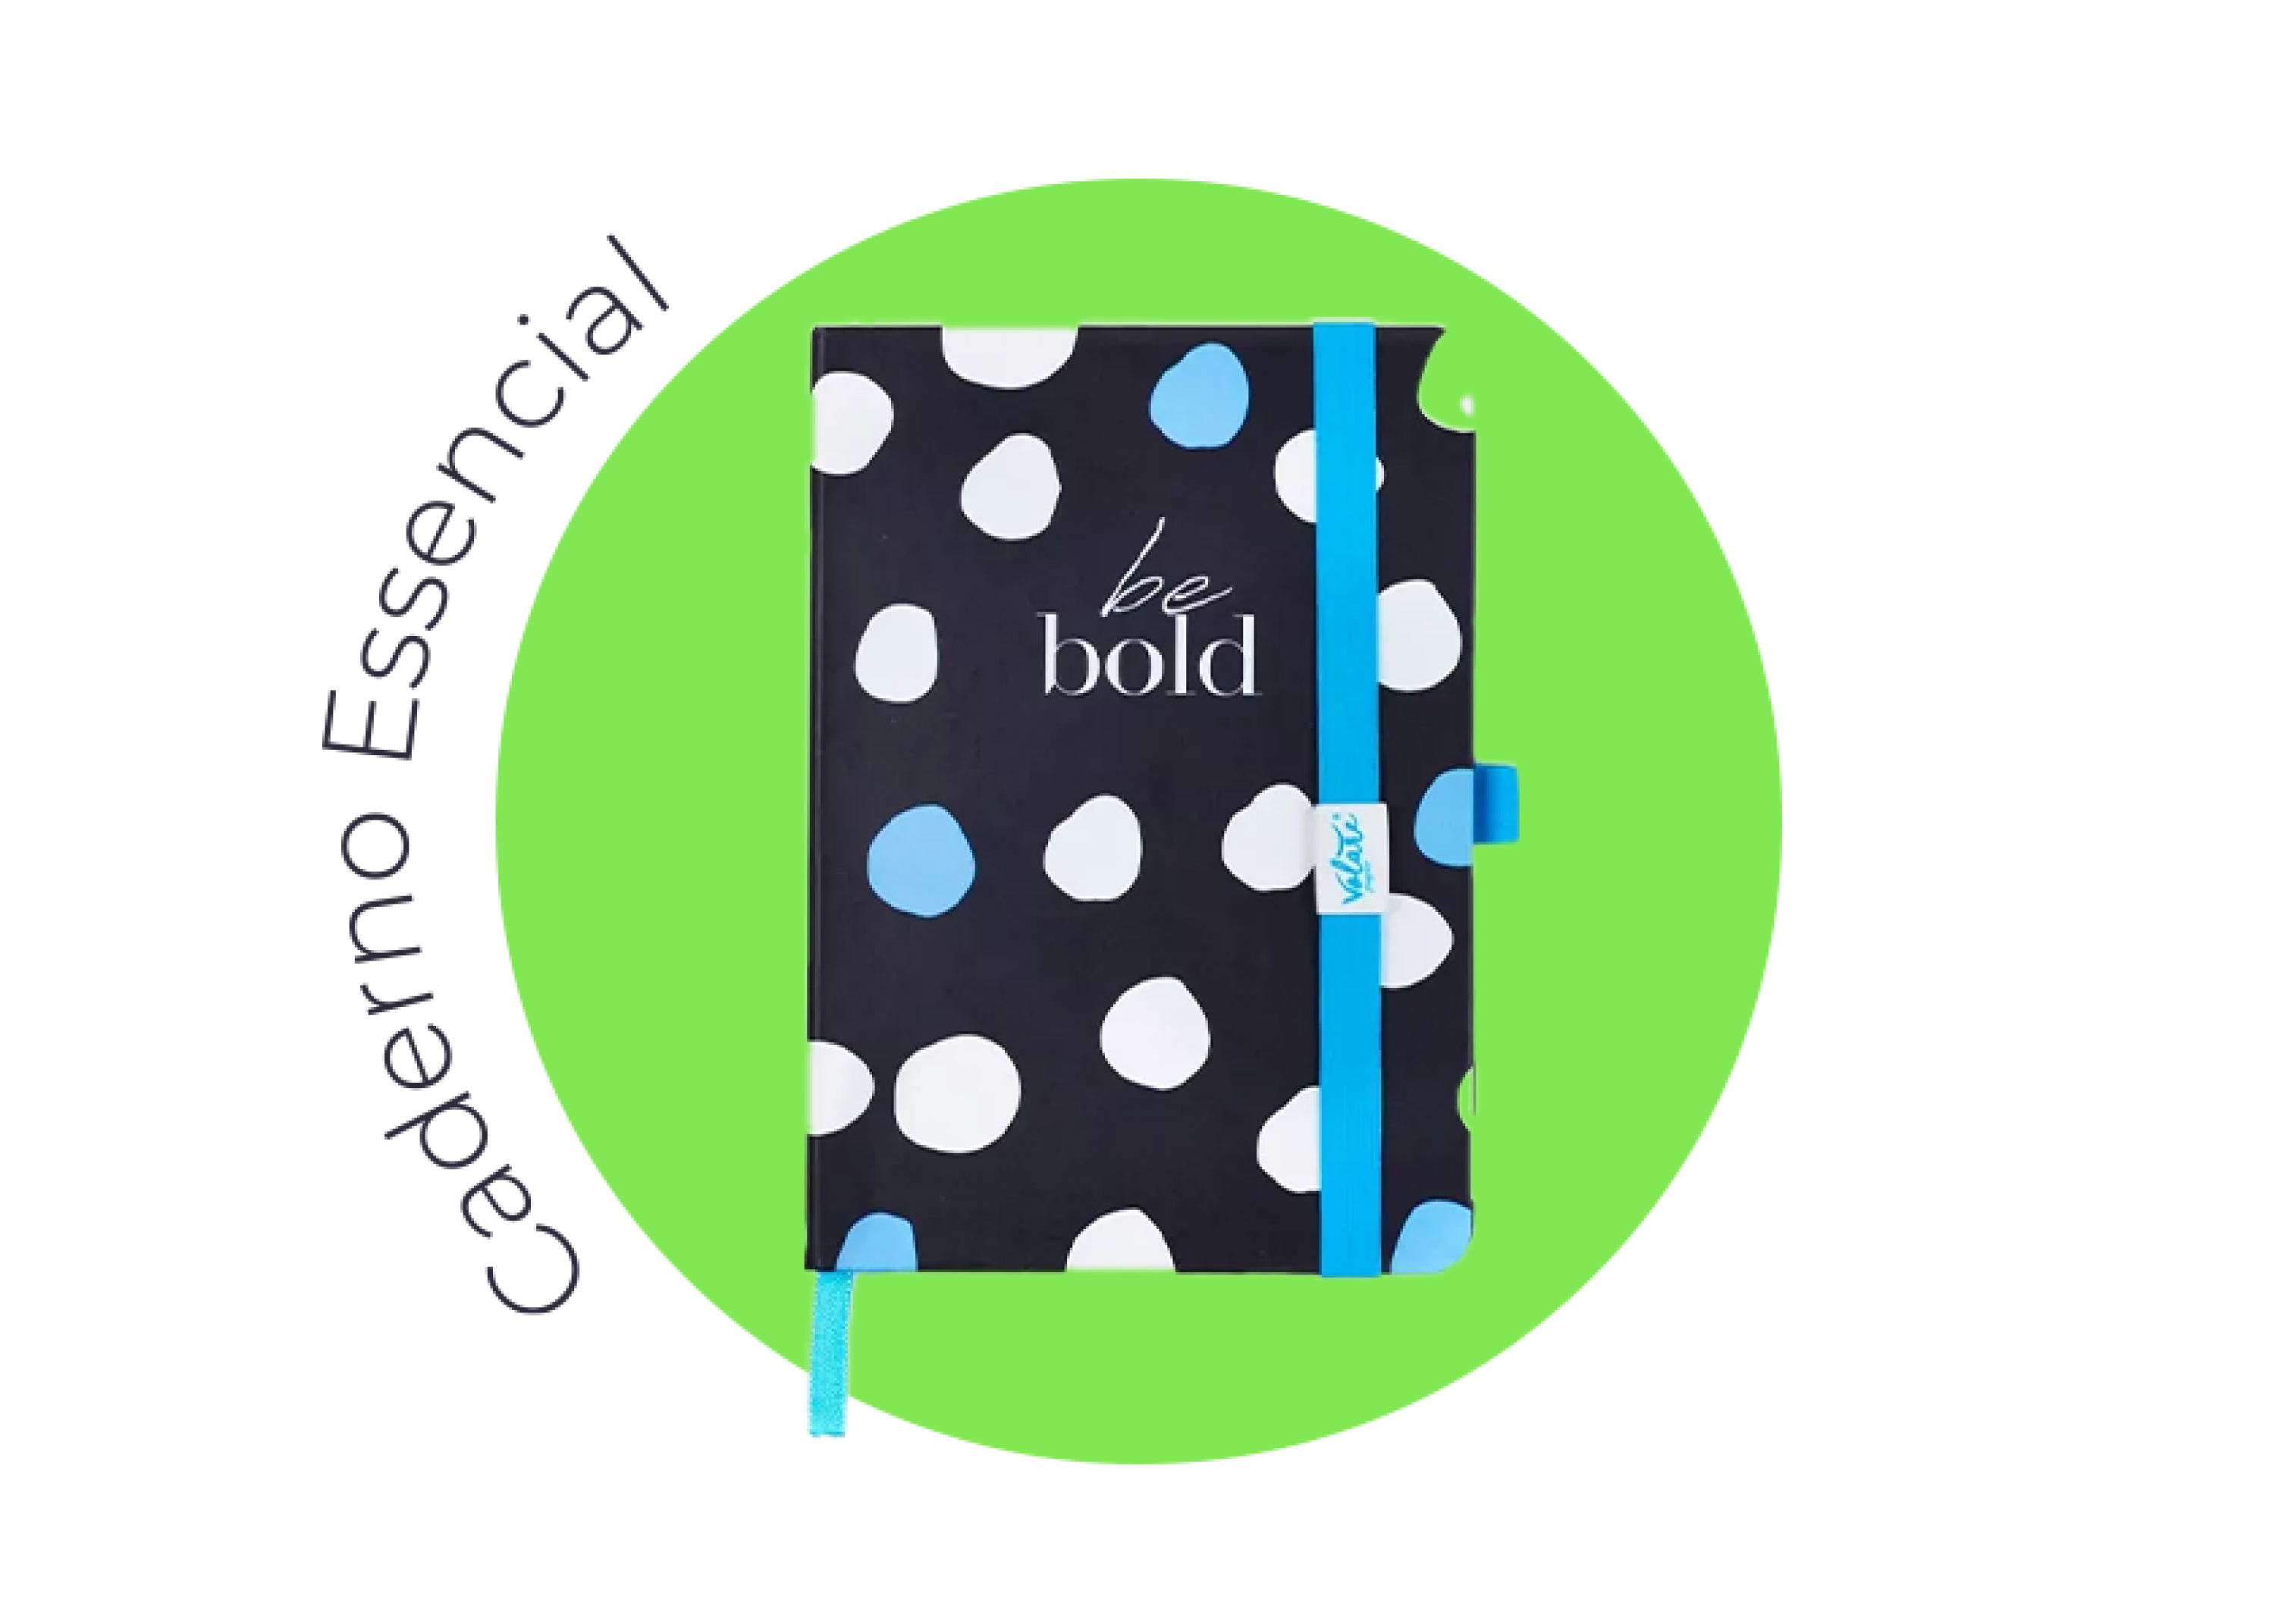 O caderno essencial é perfeito para levar na bolsa. Prático, lindo e super funcional.